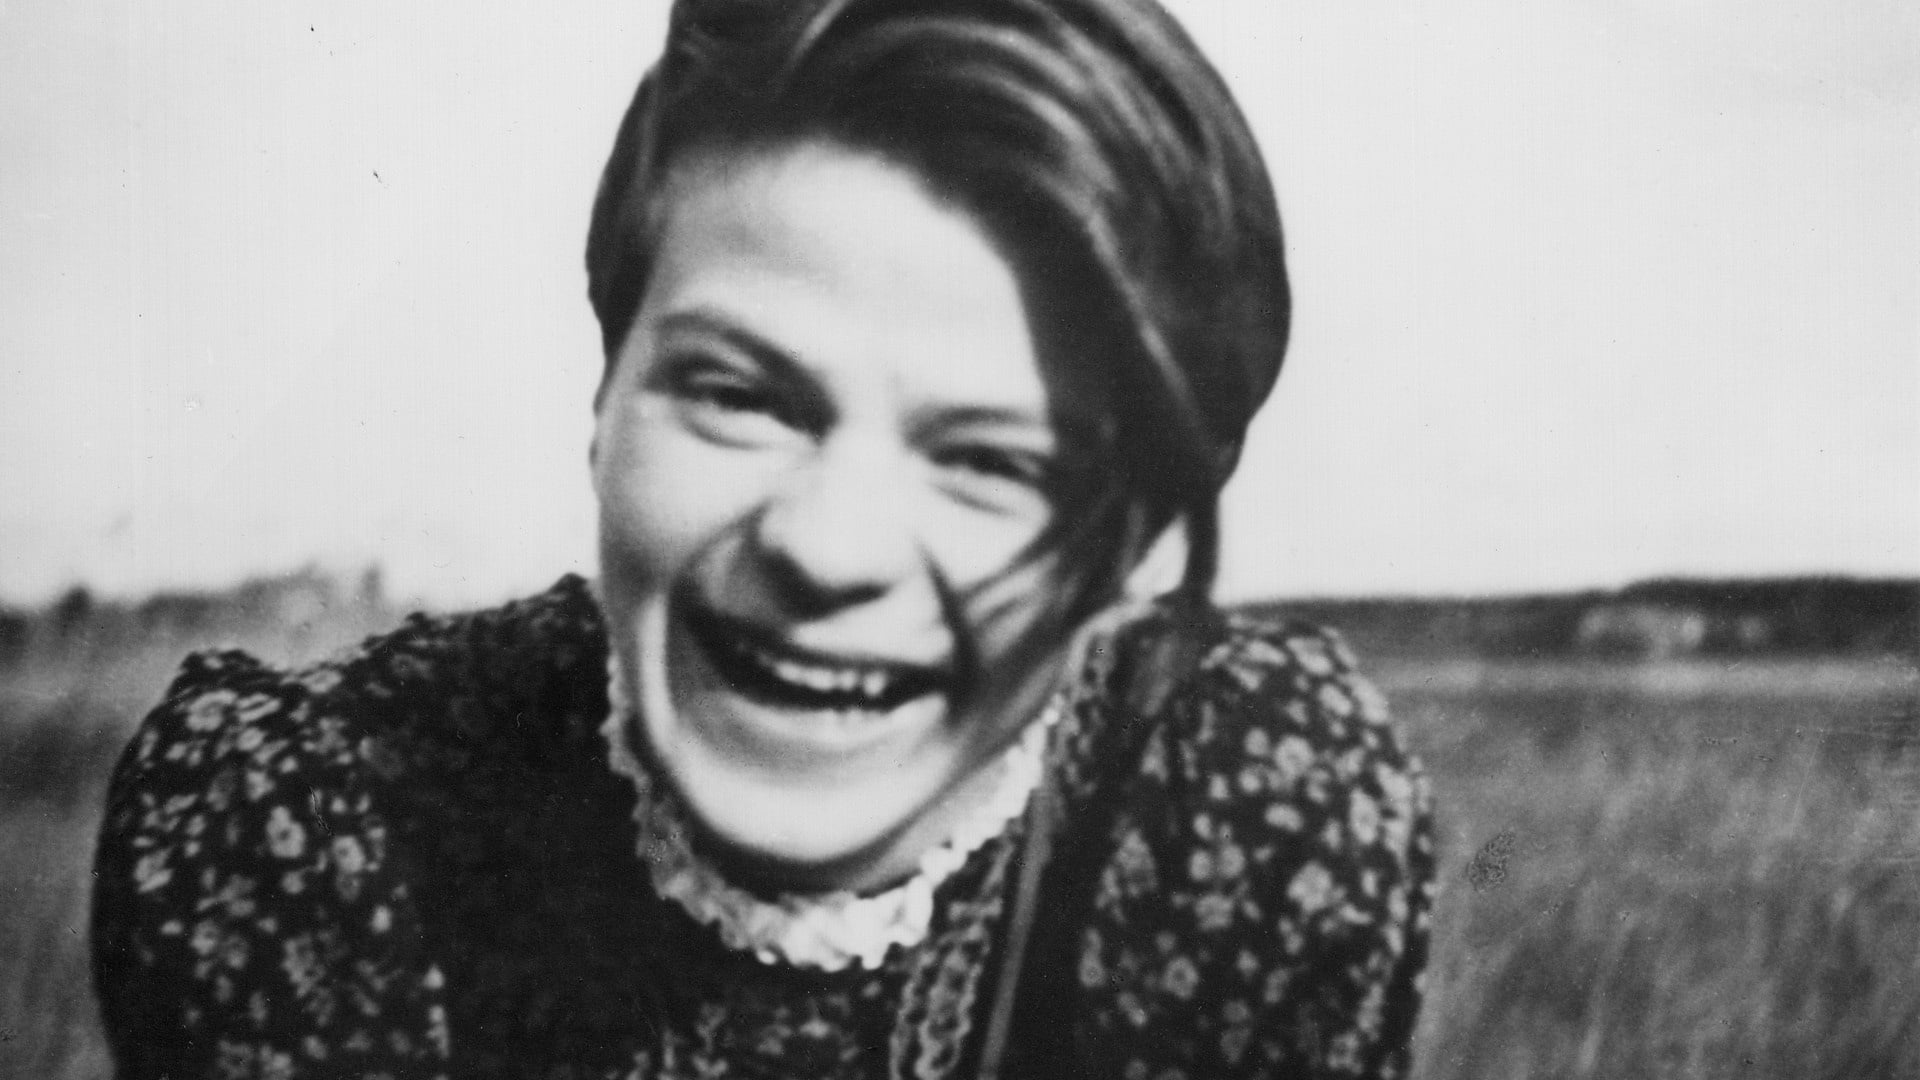 Sophia Magdalena Scholl, die oft nur Sophie genannt wurde, kam am 9. Mai 1921 in Forchtenberg zur Welt. Als Studentin engagierte sie sich in der Widerstandsgruppe „Weiße Rose“. Nach einer Flugblatt-Aktion an der Universität München wurde sie verhaftet und am 22. Februar 1943 hingerichtet.